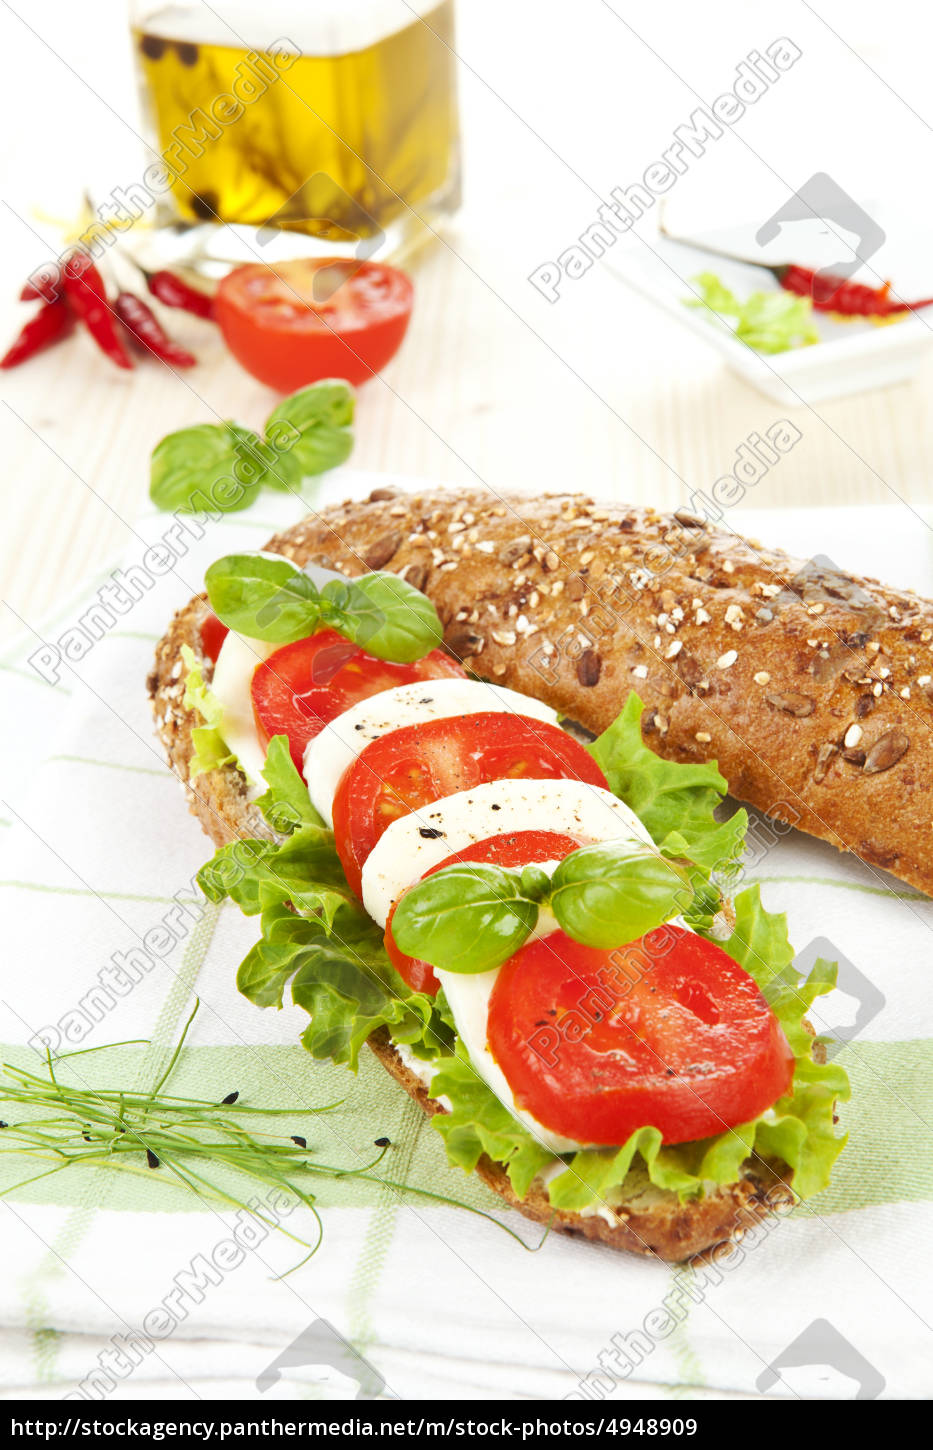 tomaten mozzarella baguette. - Lizenzfreies Bild - #4948909 ...